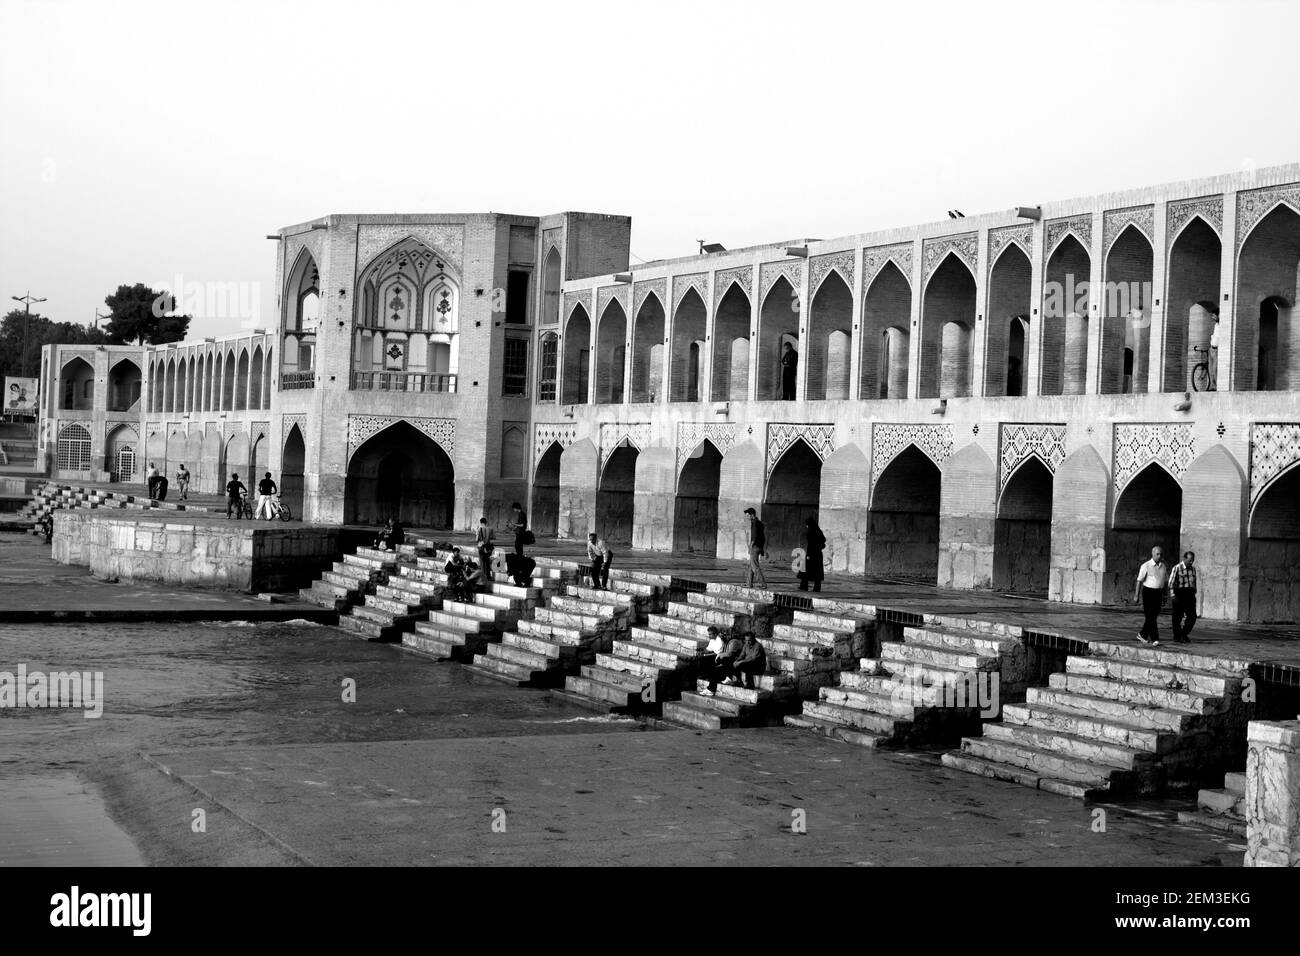 Monochrom, schwarz-weiß, Bild der Khaju-Brücke, Isfahan, Iran Stockfoto